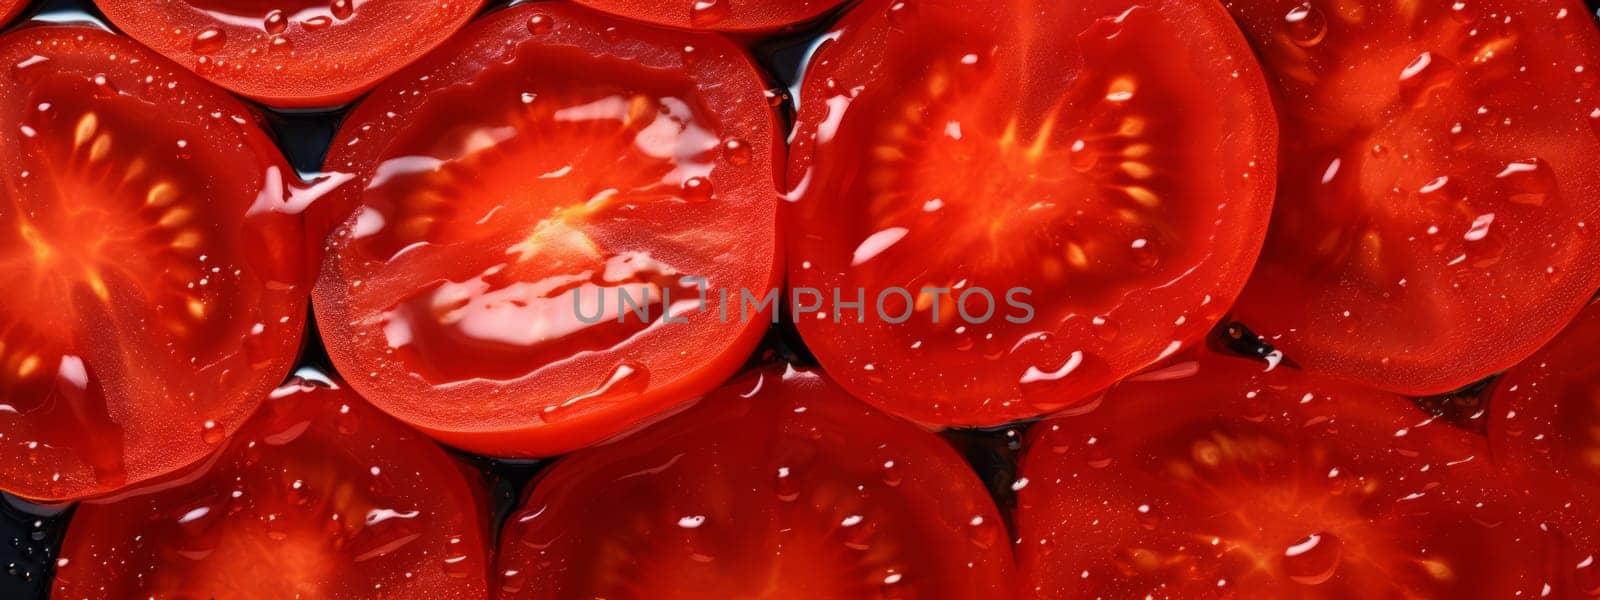 A round piece of tomato. Macro background. Tomato texture